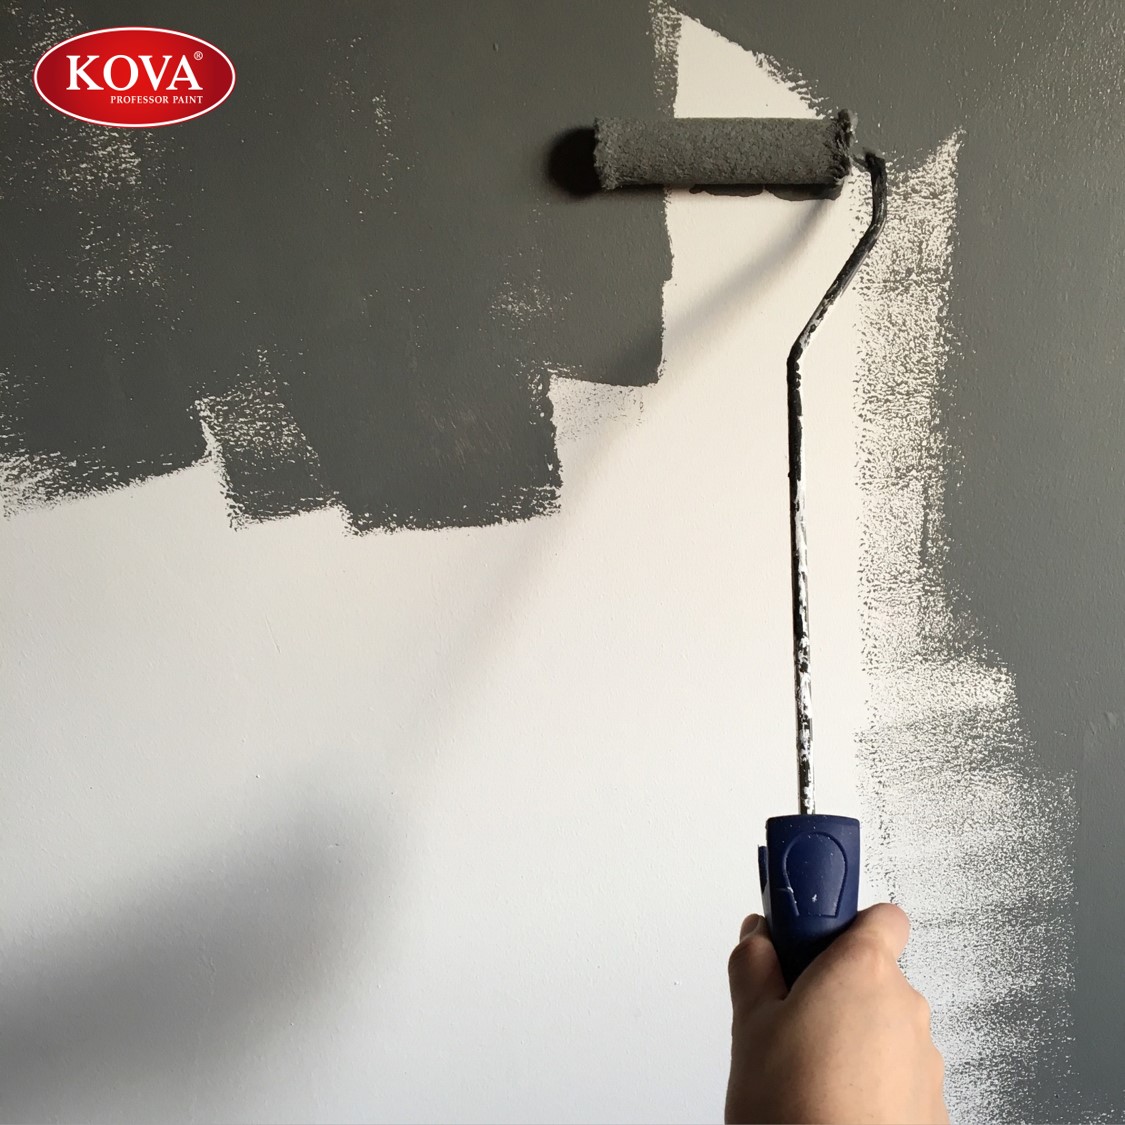 Cách tốt nhất để đảm bảo bề mặt tường của bạn được chống thấm hiệu quả là sử dụng các sản phẩm có chất lượng cao. Hãy xem hình ảnh liên quan để tìm hiểu thêm về các sản phẩm chống thấm tường đáng tin cậy.